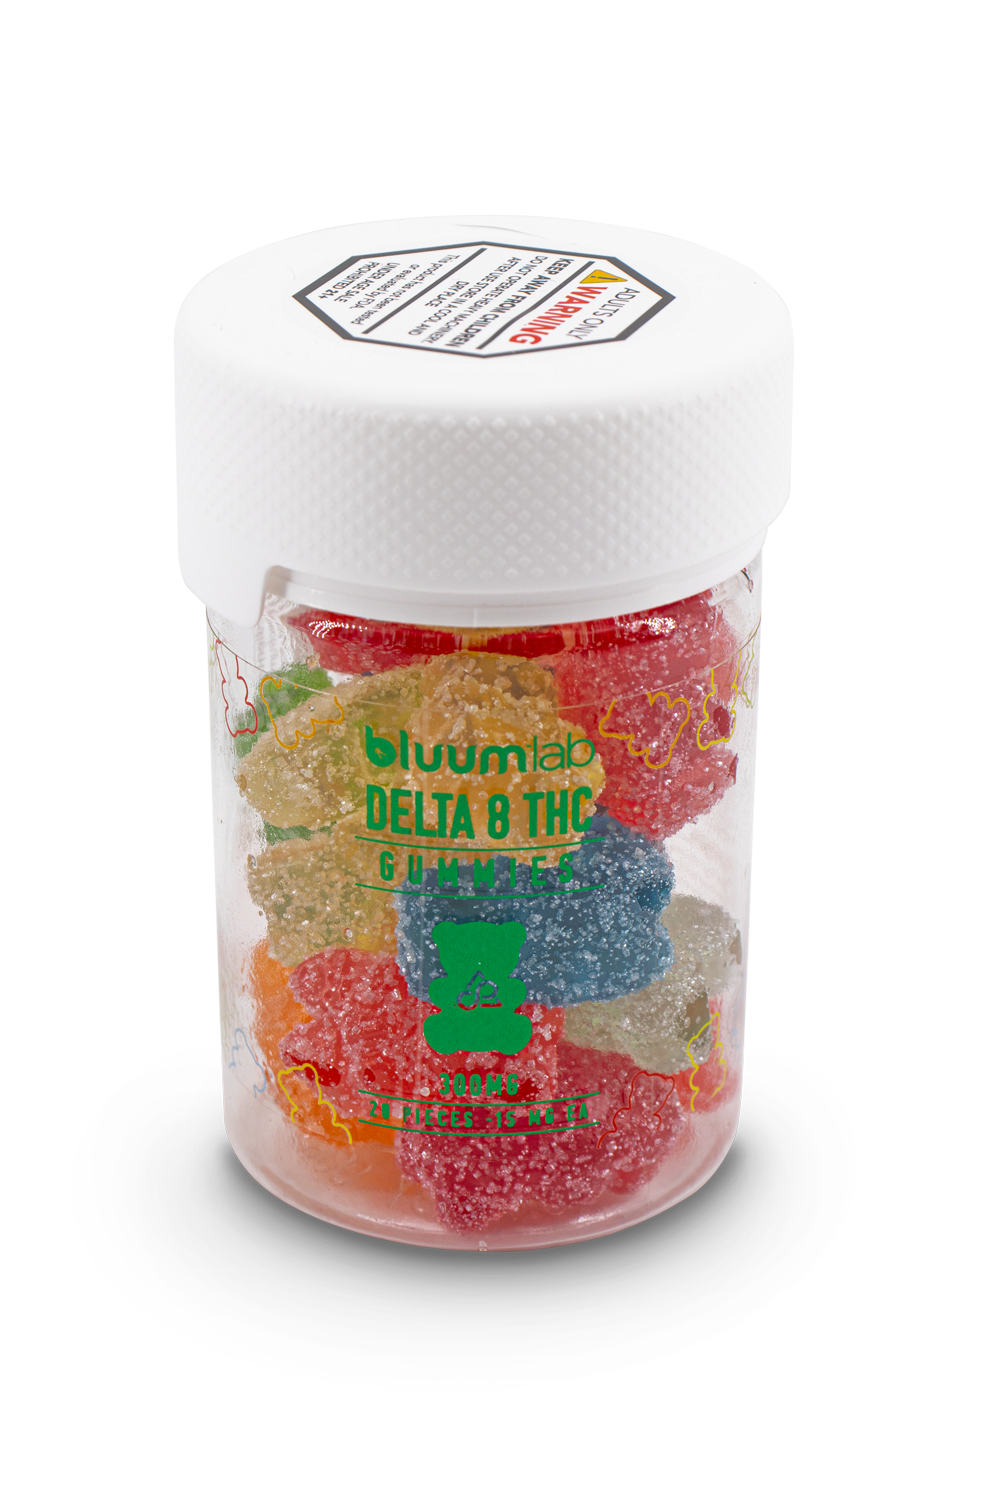 Bluum Lab - Delta 8 Gummies Edibles Bluum Lab   